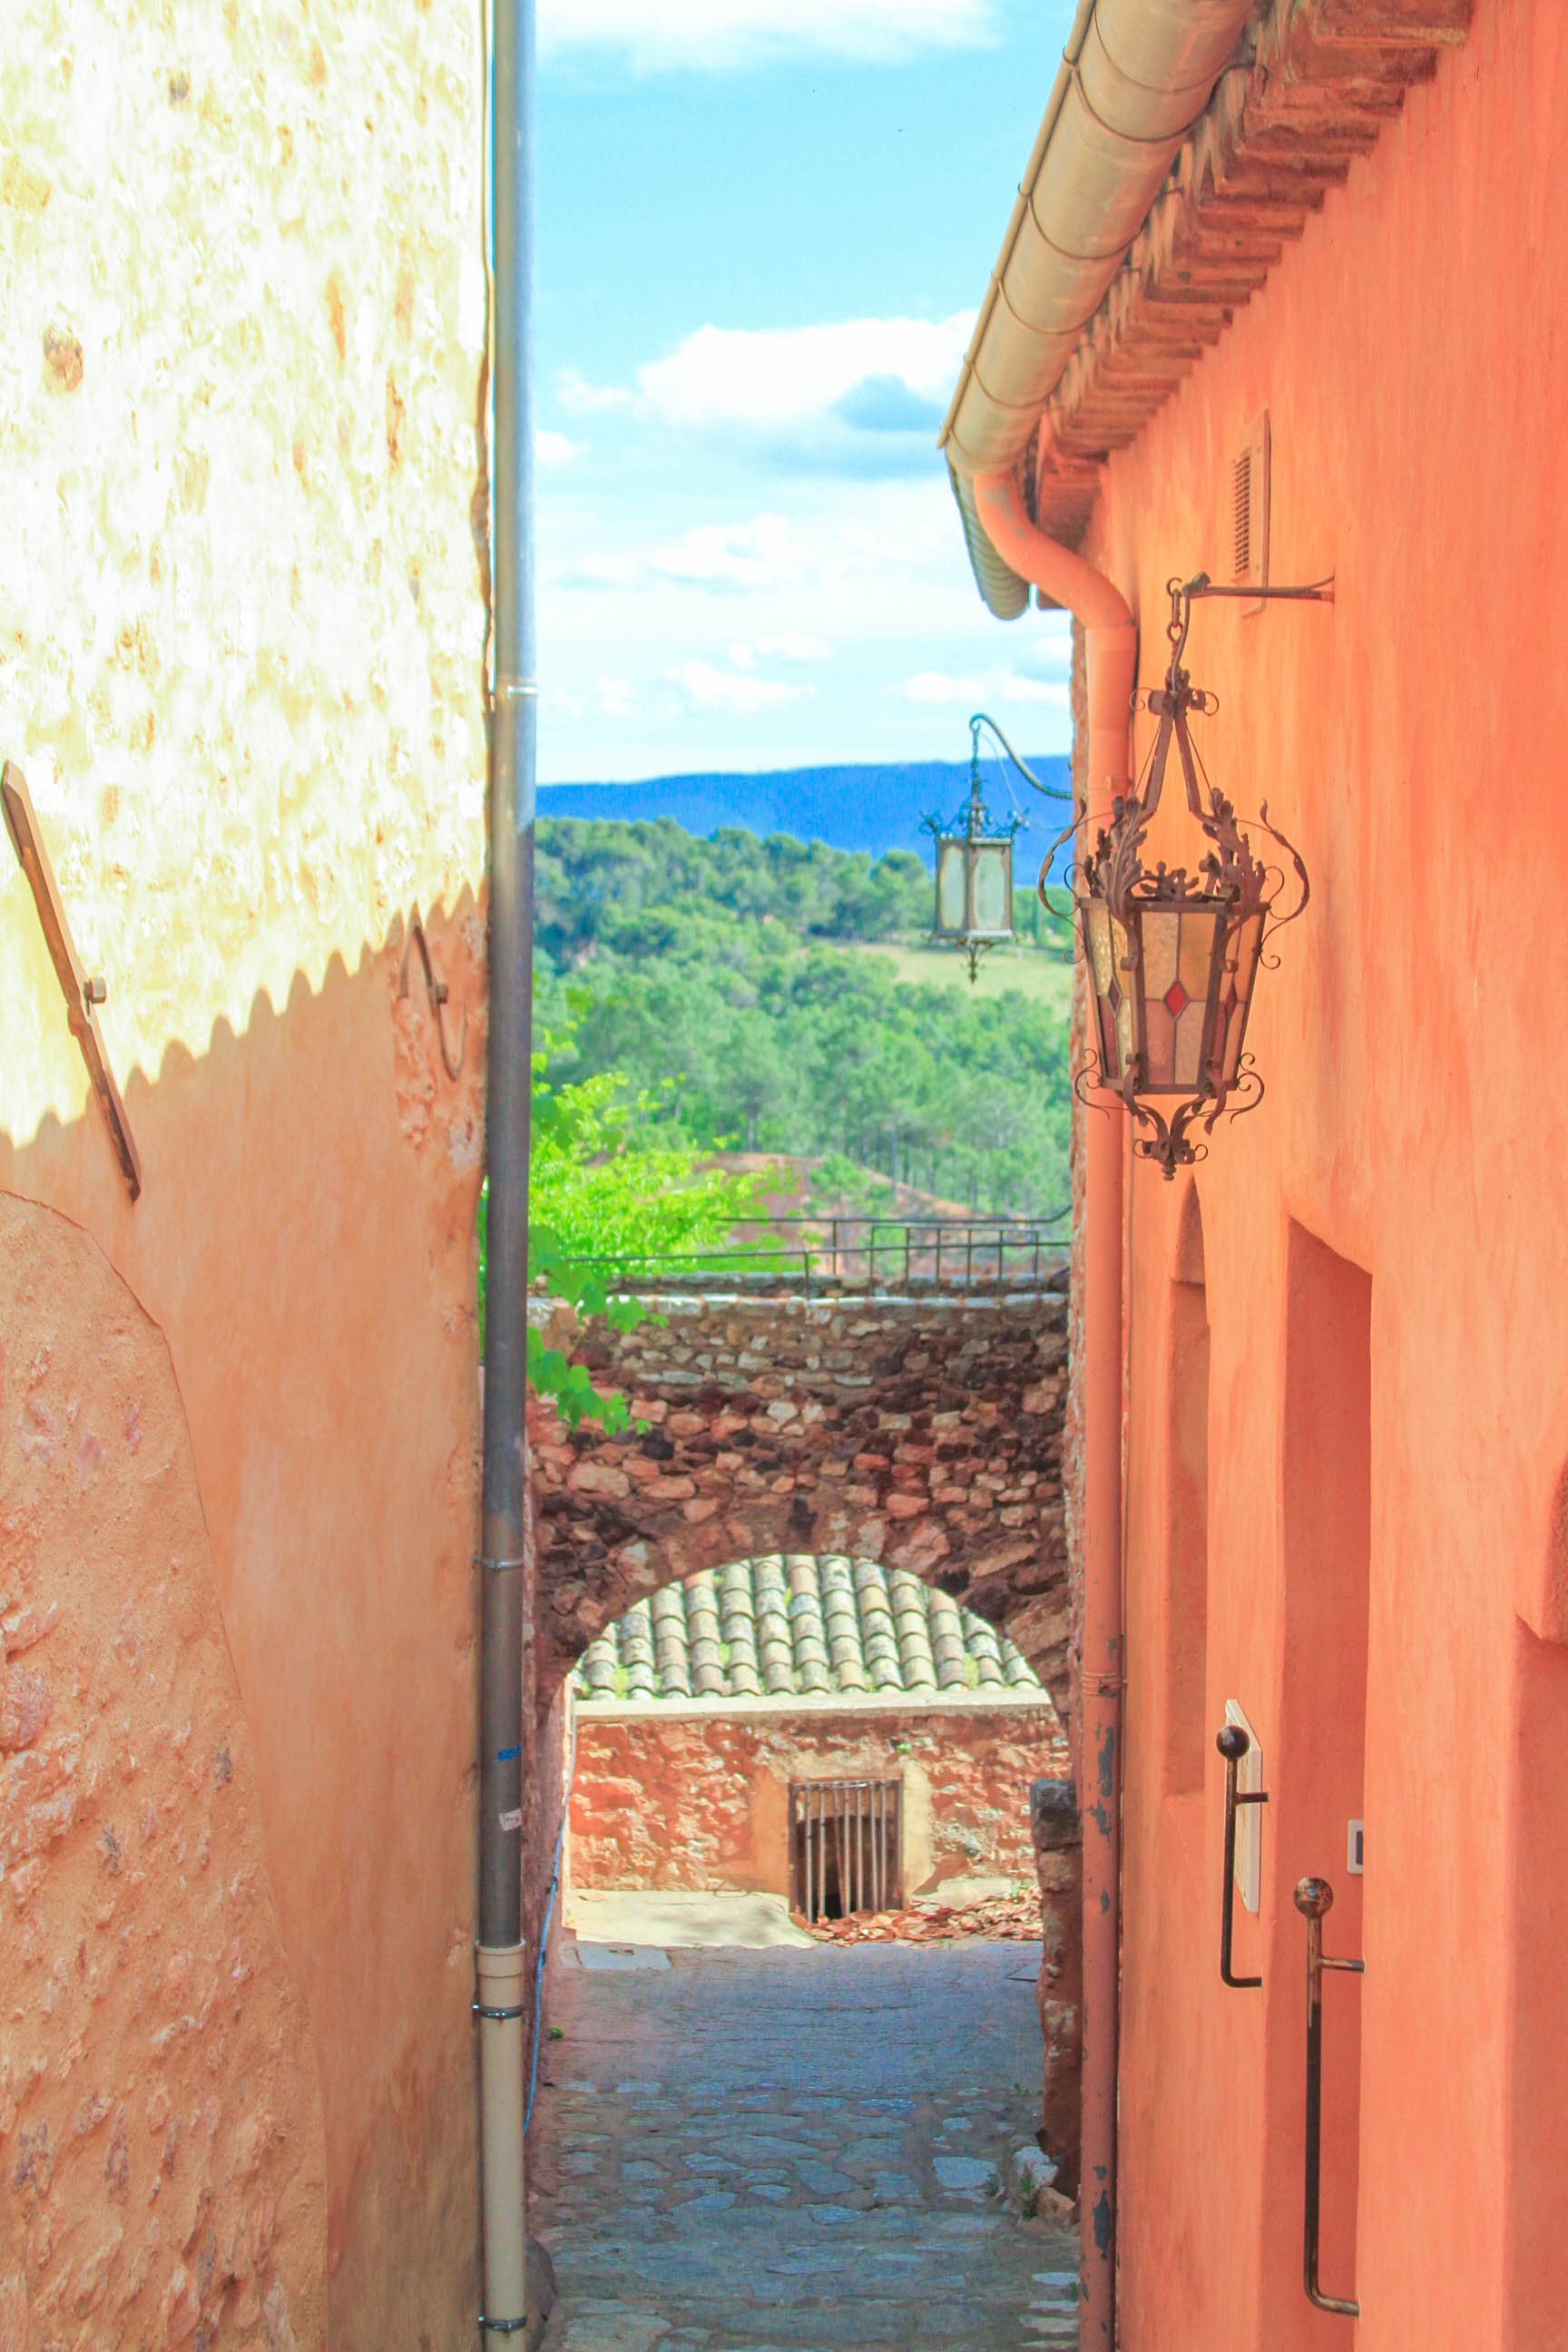 Roussillon, France | #mfrancisdesigntravels